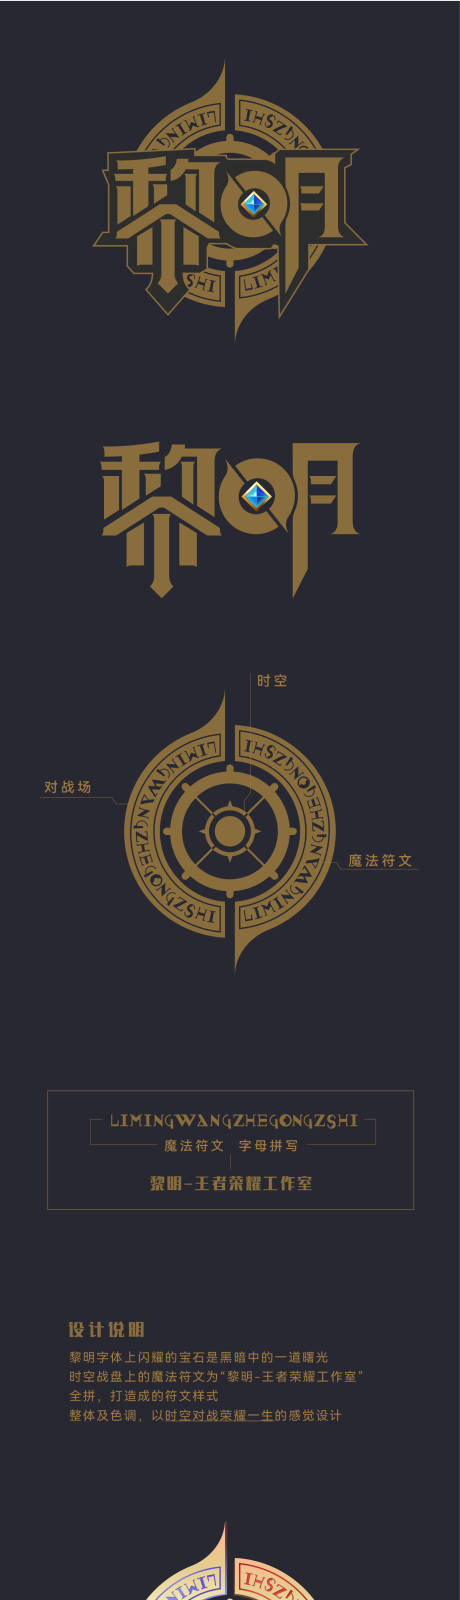 王者荣耀工作室logo